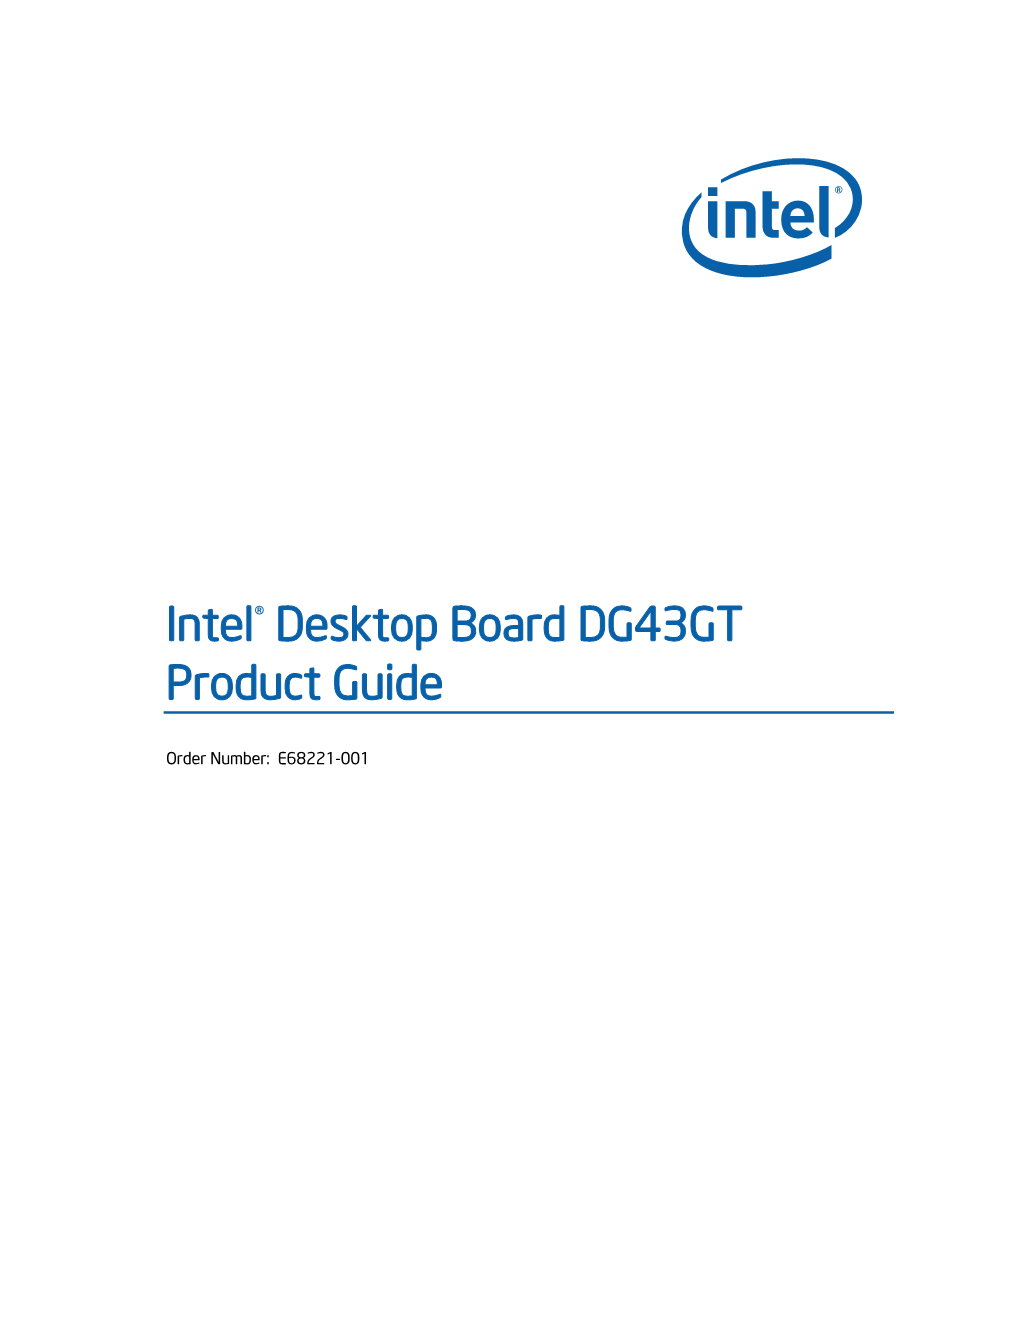 Intel® Desktop Board DG43GT Product Guide